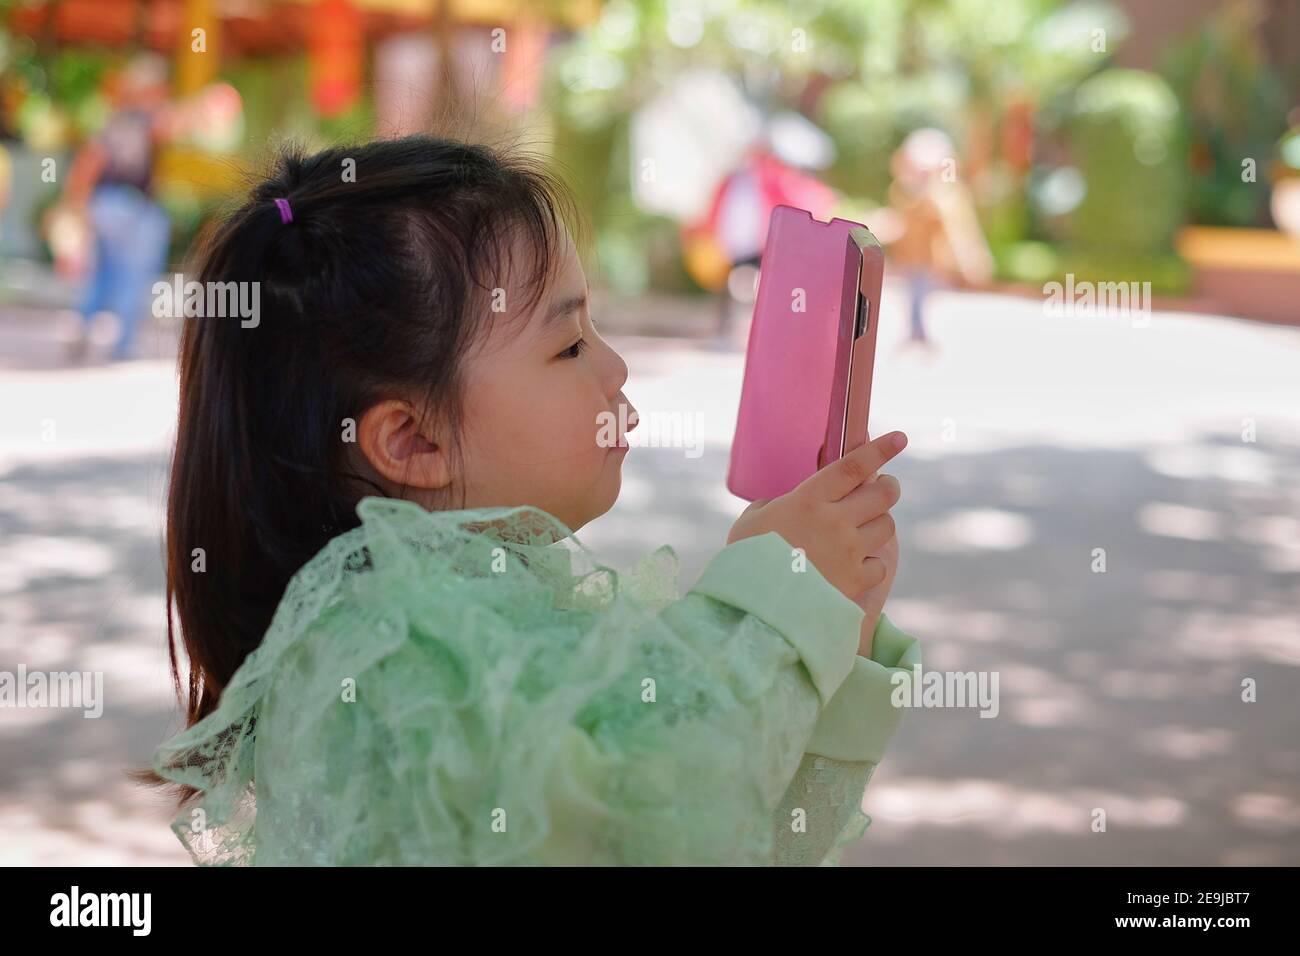 Une jolie jeune fille asiatique tient un smartphone rose, essayant de prendre une photo pendant ses vacances. Banque D'Images